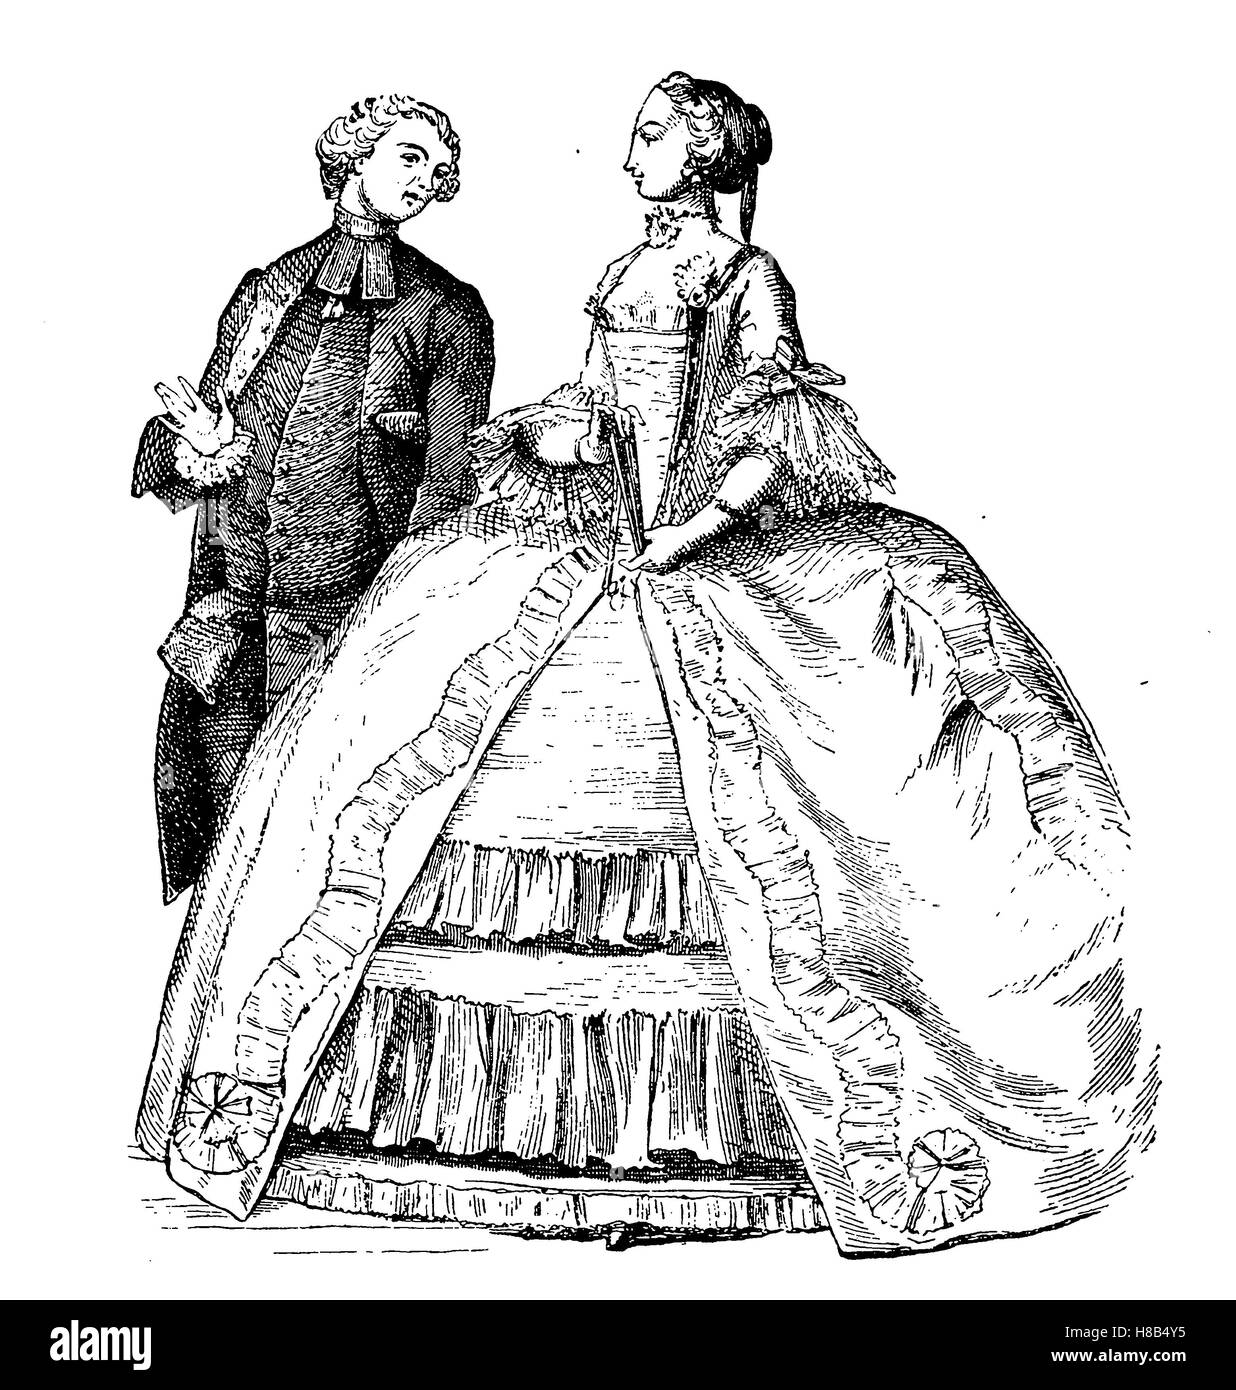 Señora con Crinoline y Abbe, 1755, Francia, Historia de la moda, vestuario historia Foto de stock